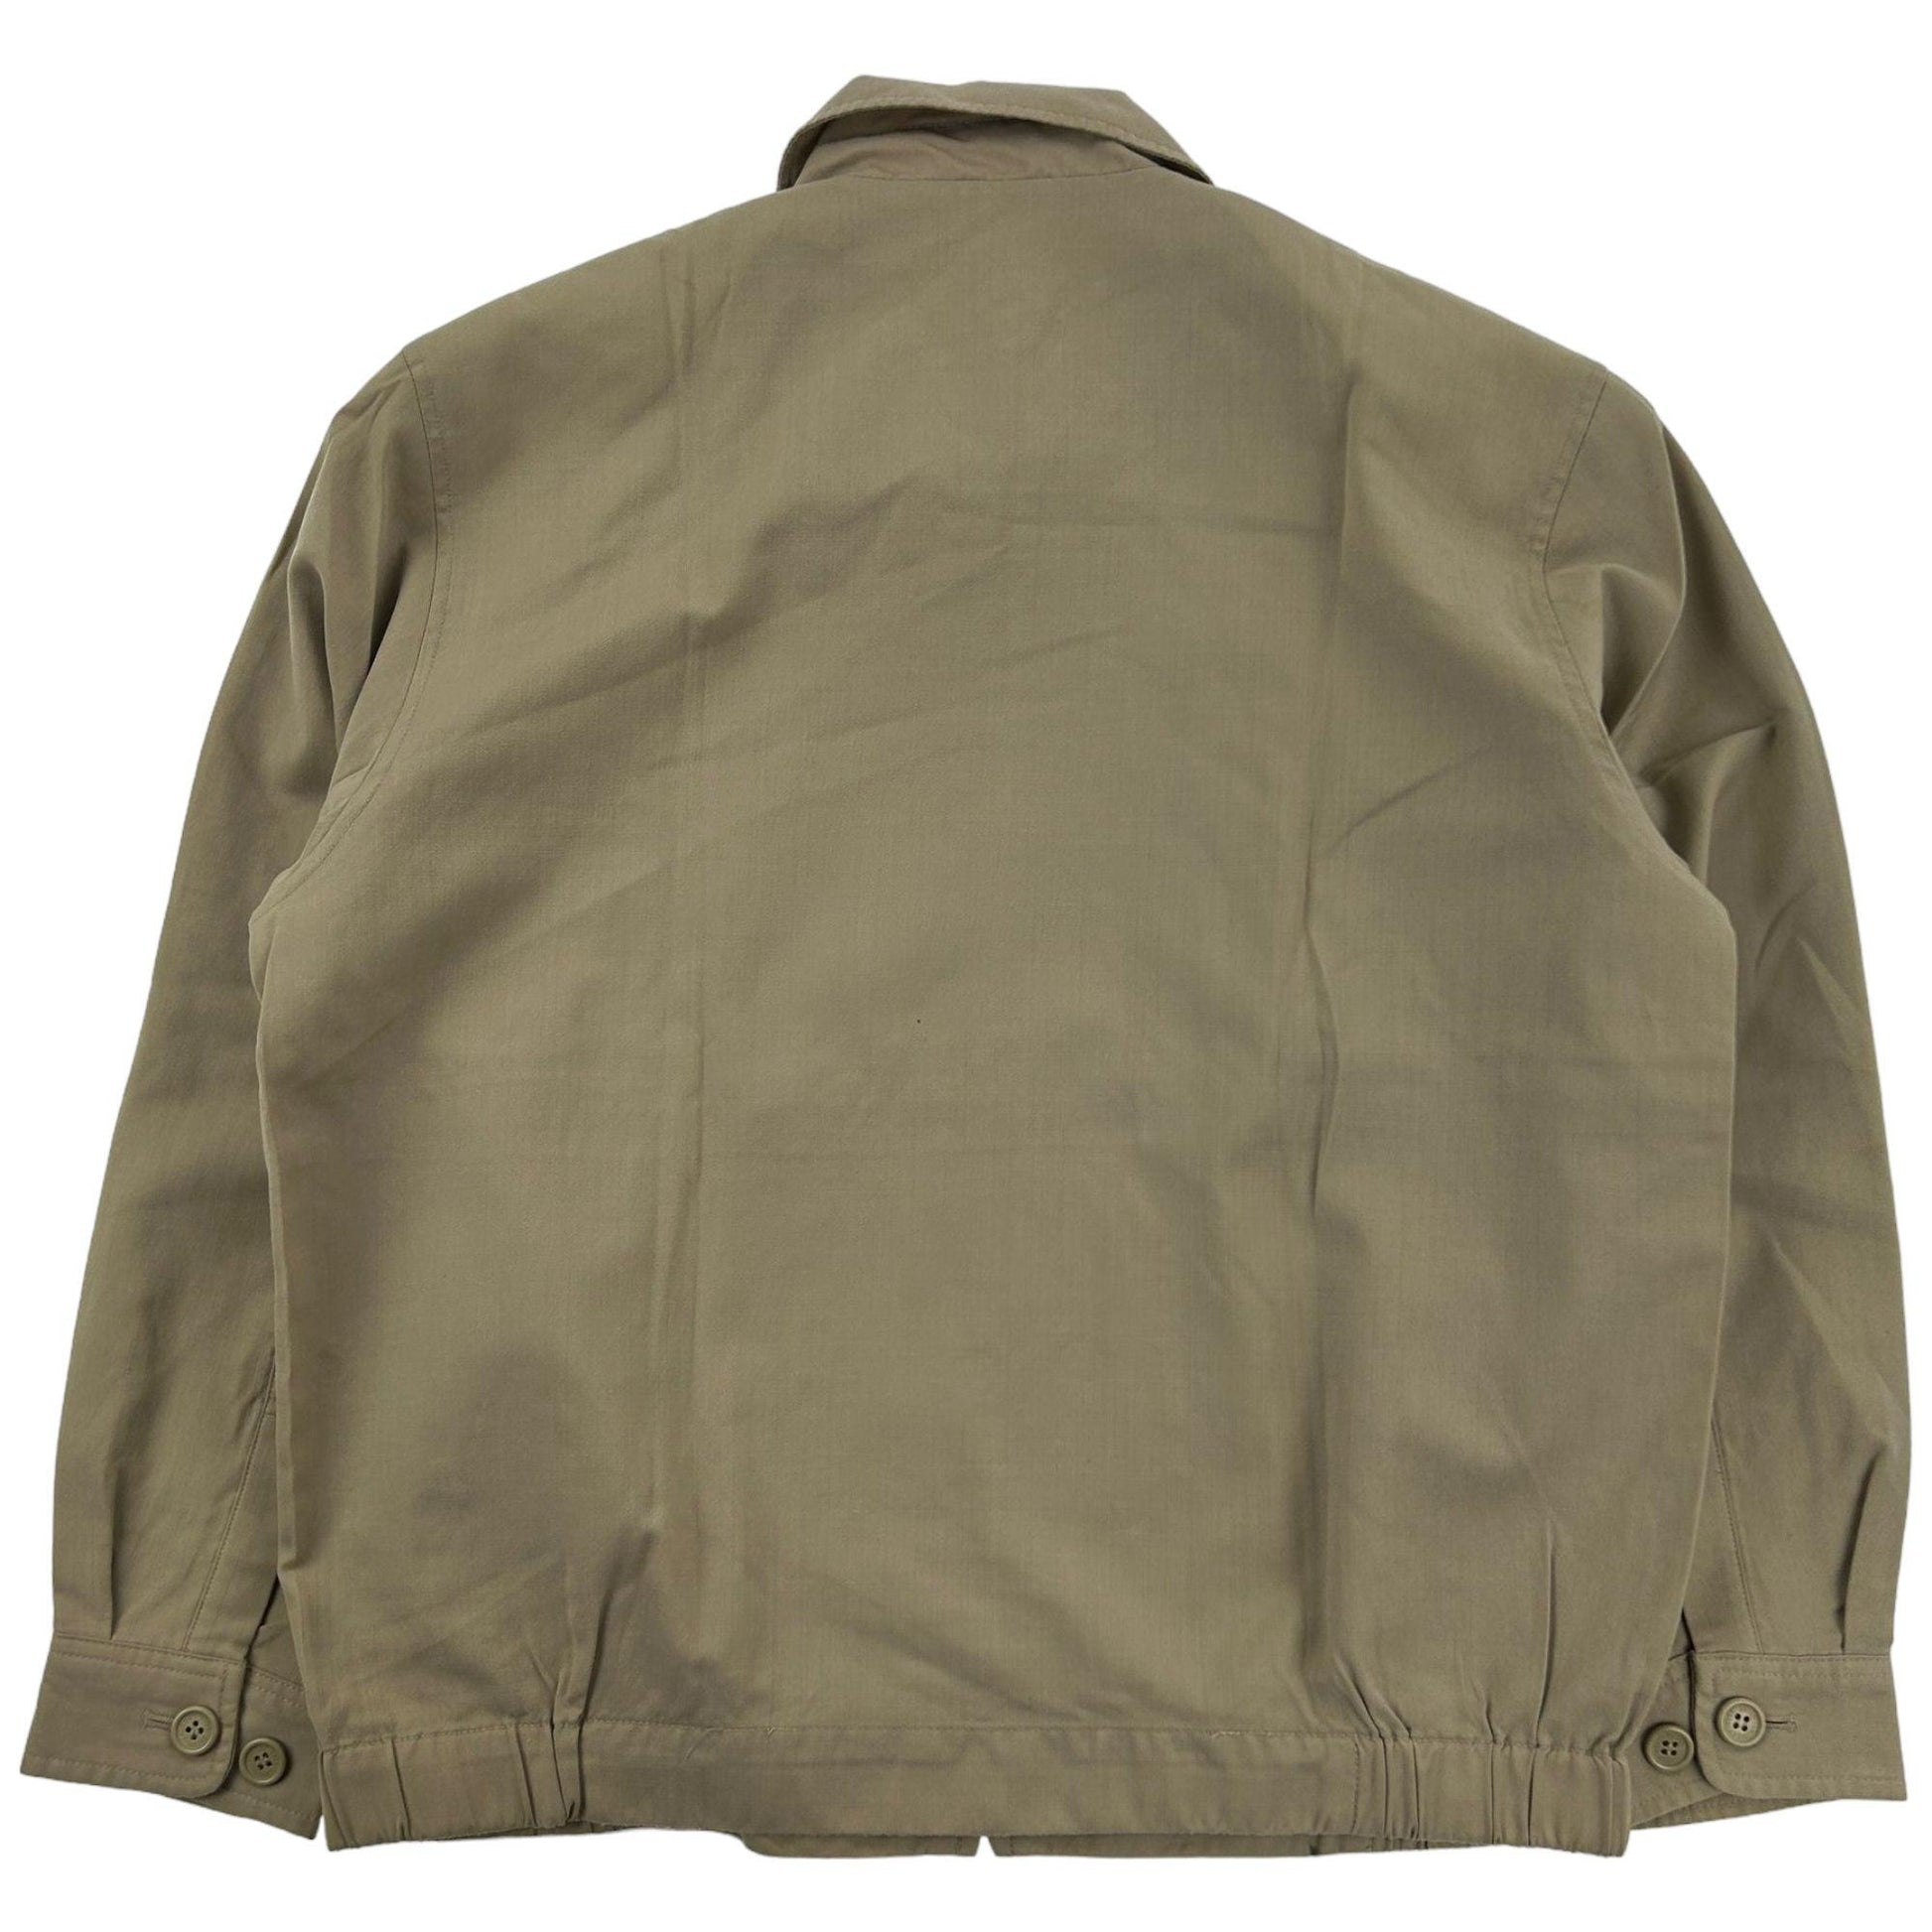 Vintage Yves Saint Laurent Harrington Jacket Size S - Known Source